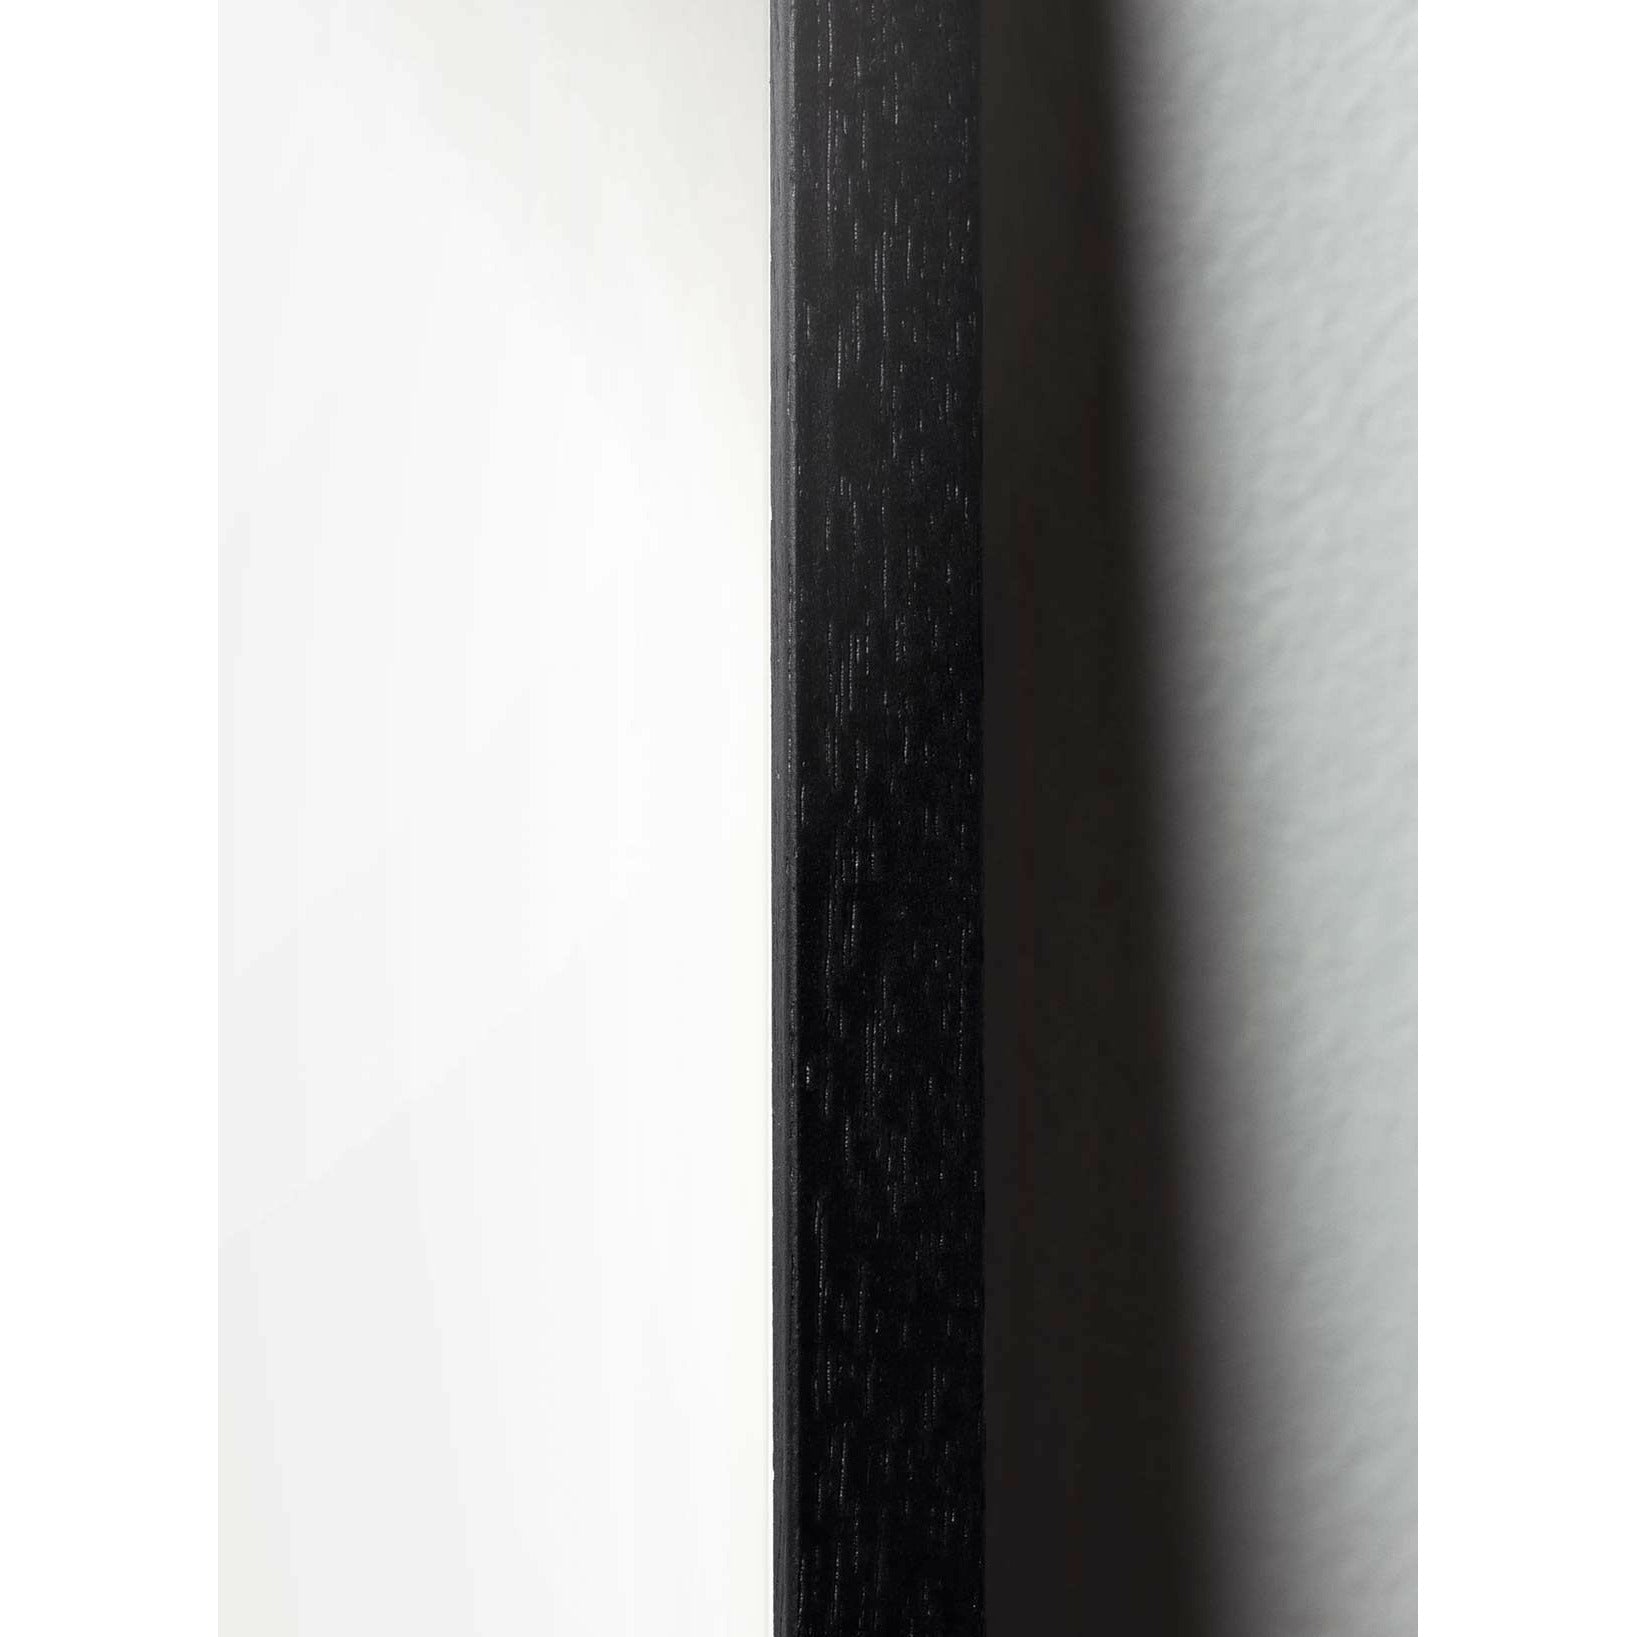 Plakát křížového formátu vajec z mozku, rám v černém lakovaném dřevu A5, hnědý